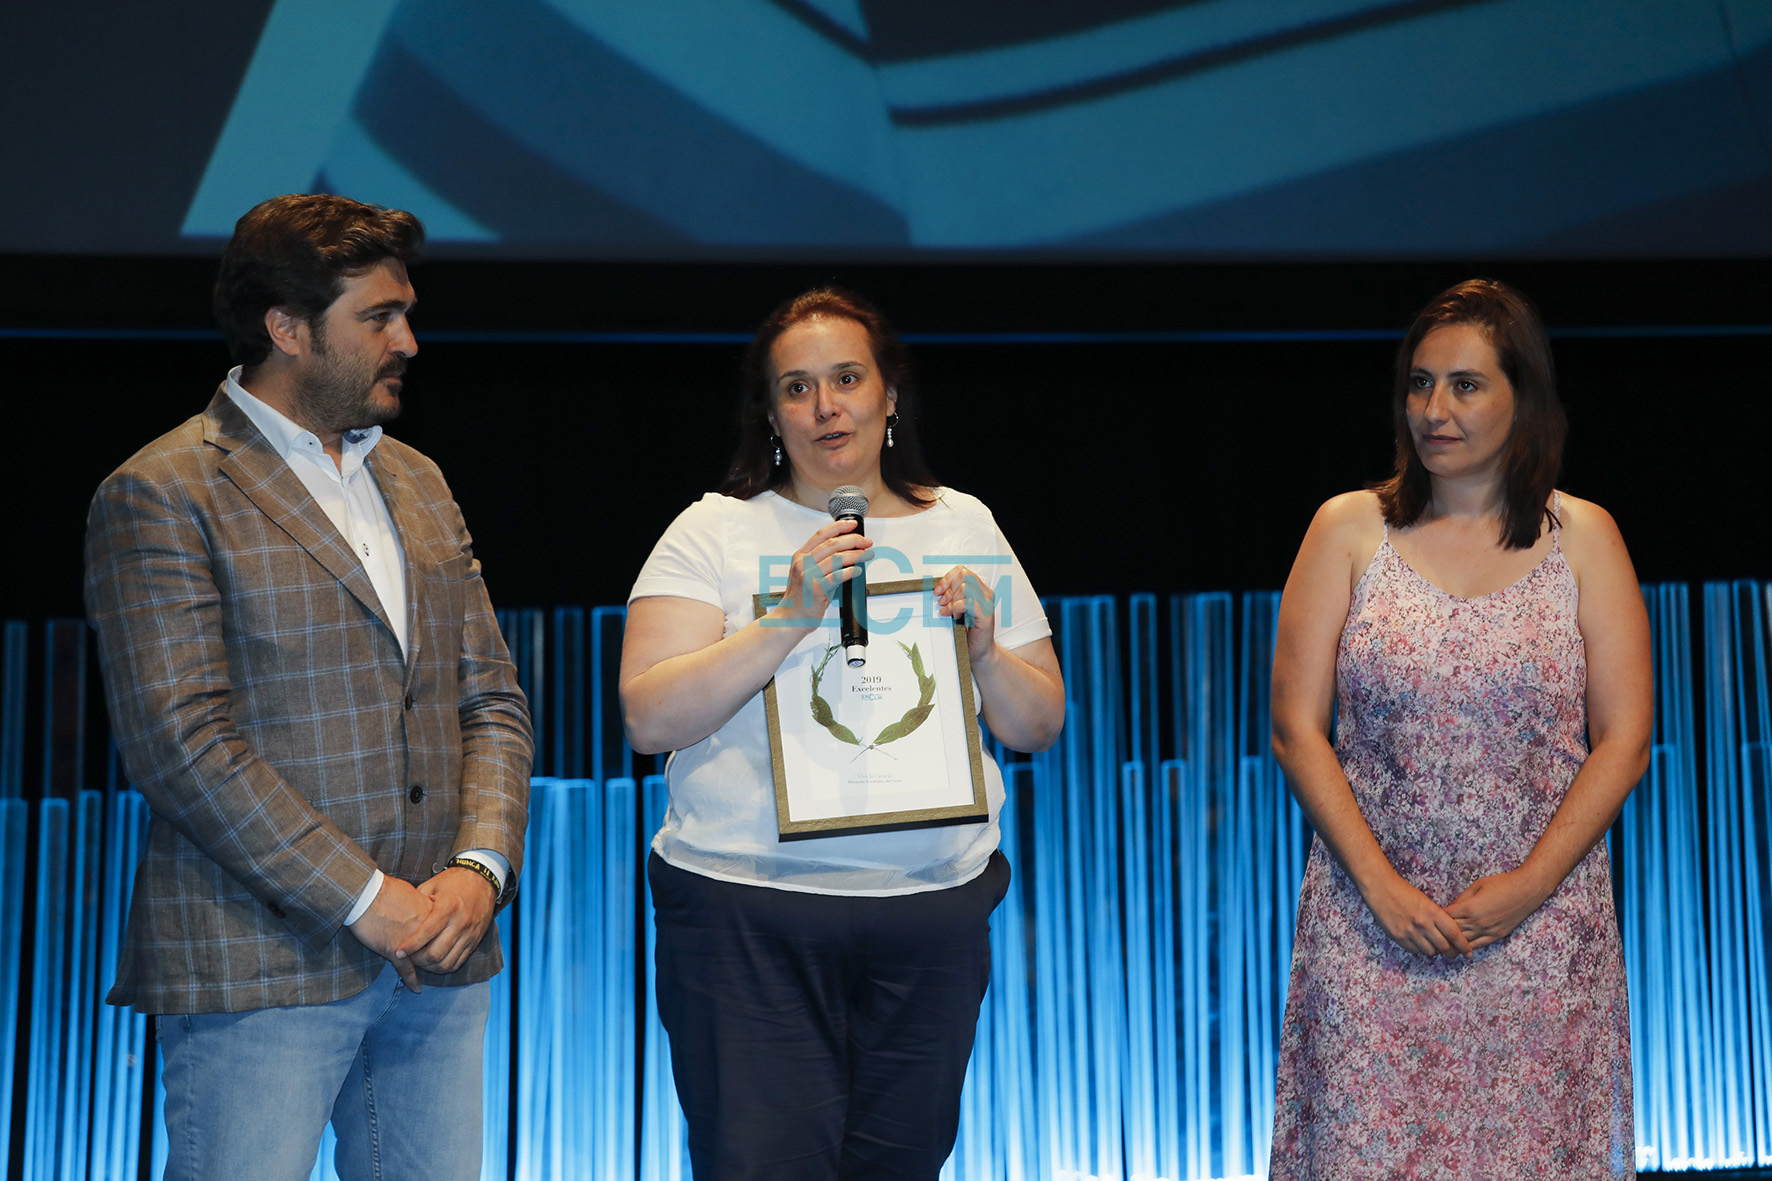 física Rocío del Cerro, madre de Fernando Fernández del Cerro, recogiendo el premio "Viva la ciencia" otorgado a su hijo.